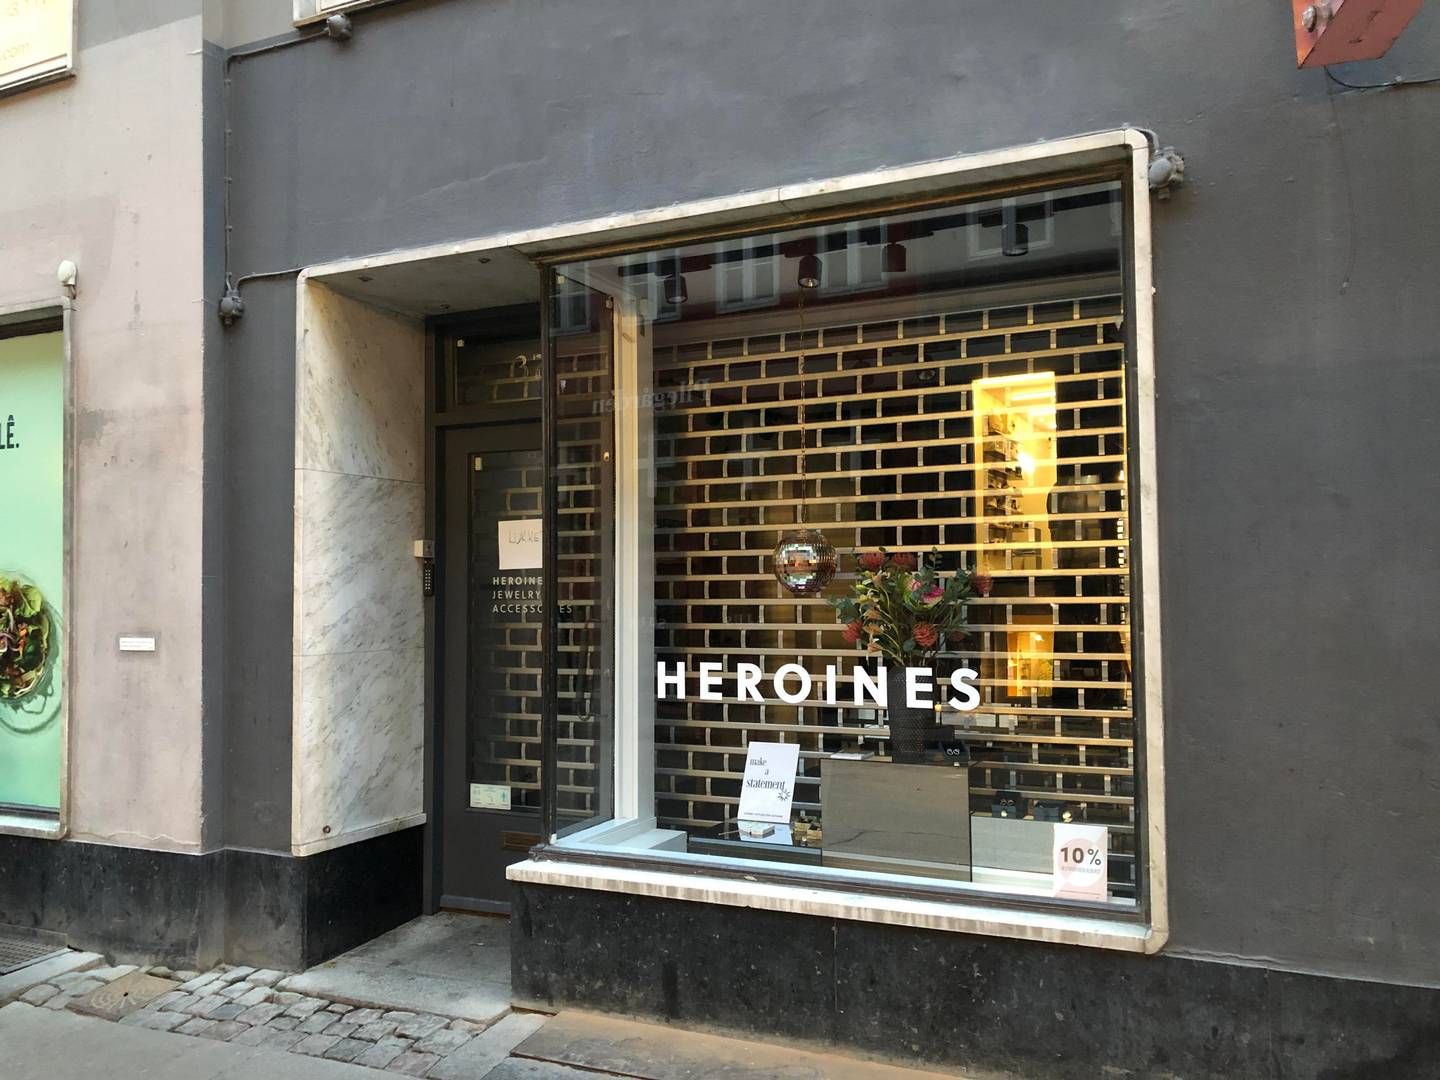 Heroines havde indtil konkursen seks butikker i og omkring hovedstaden. Selskabet åbnede sin første butik i 2017 i Pilestræde i midten af København. | Foto: Alexander Thorup